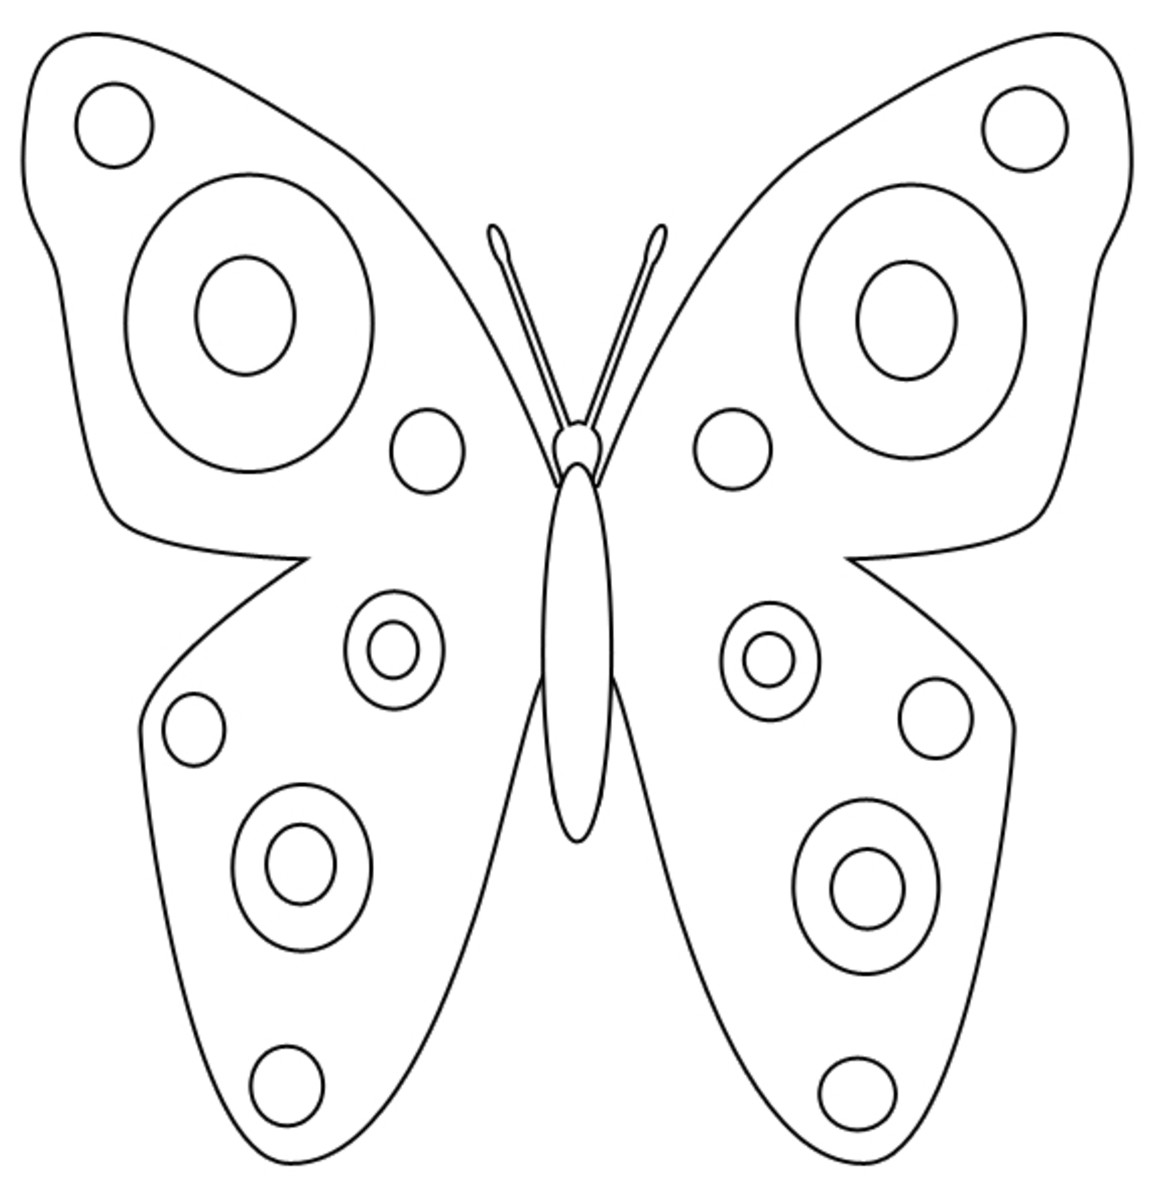 Трафарет бабочка для пластилинографии